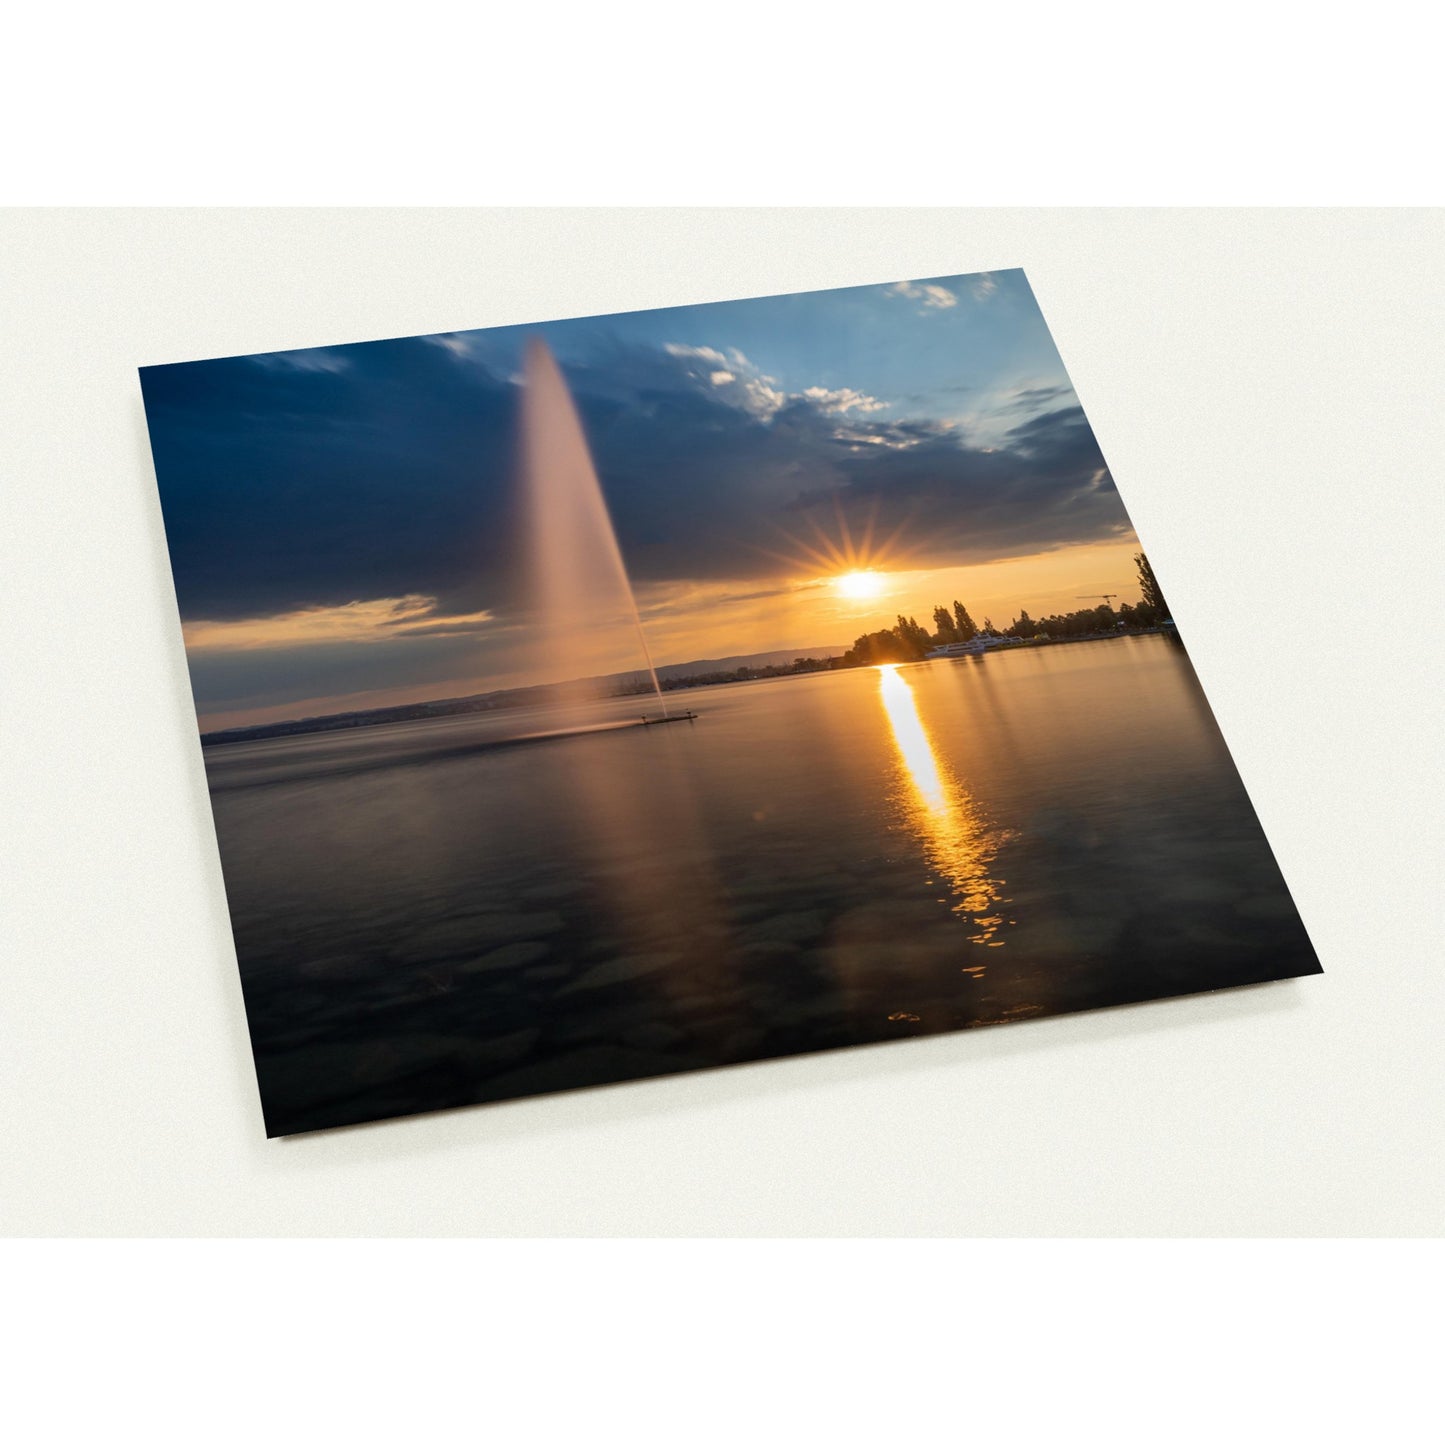 Wasserfontäne am Zugersee bei Sonnenuntergang Grusskarten-Set mit 10 Karten (2-seitig, mit Umschläge)